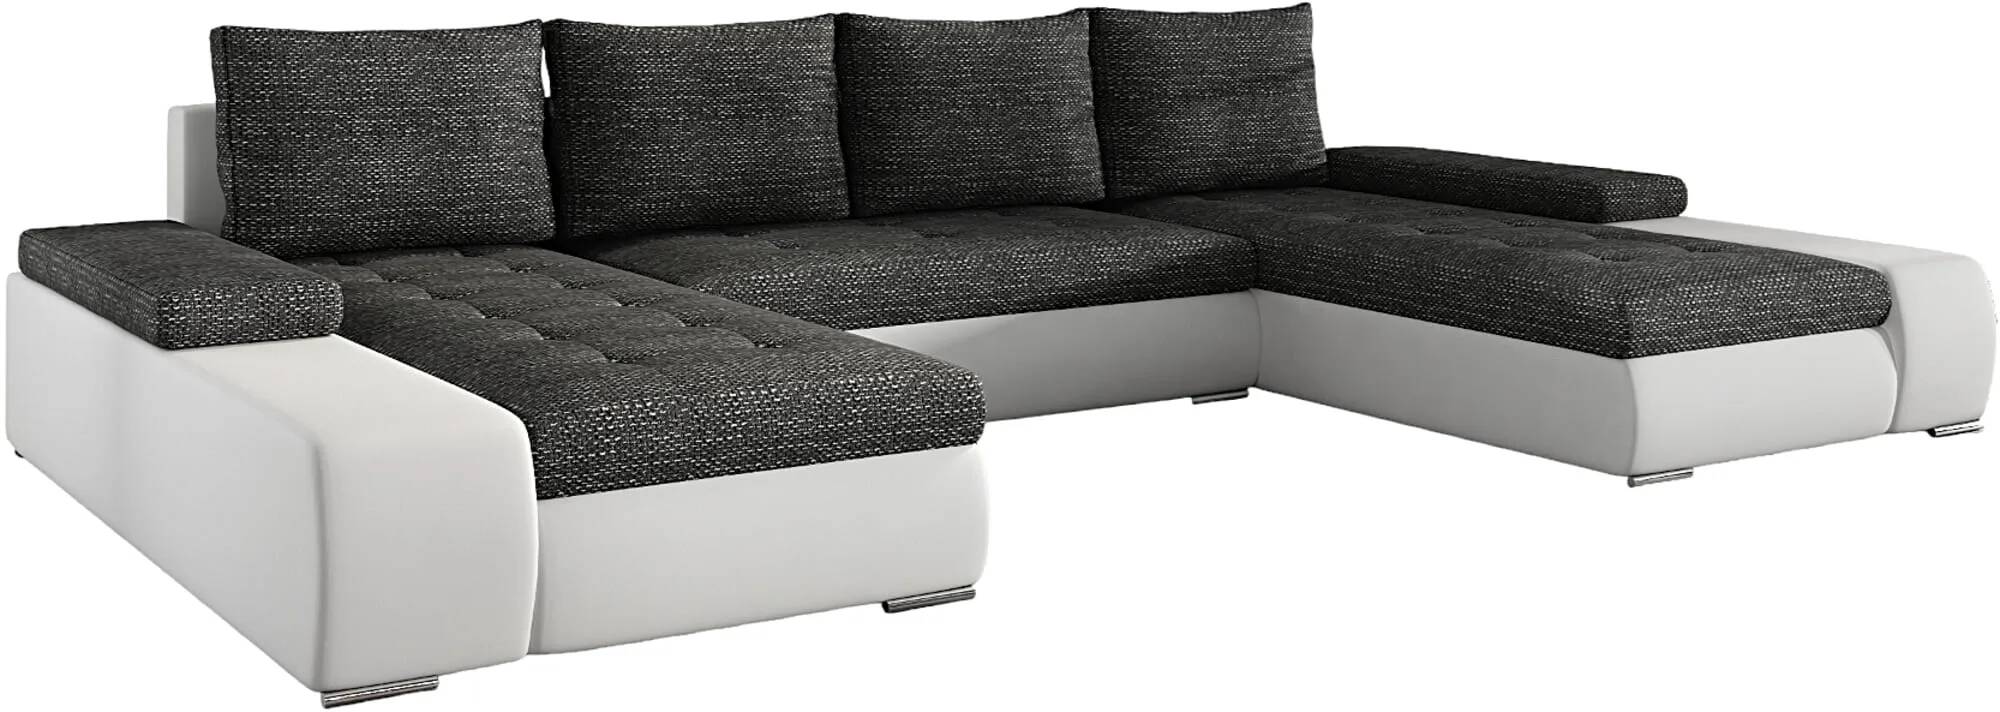 Canapé d'angle convertible en tissu chiné gris foncé et simili cuir blanc